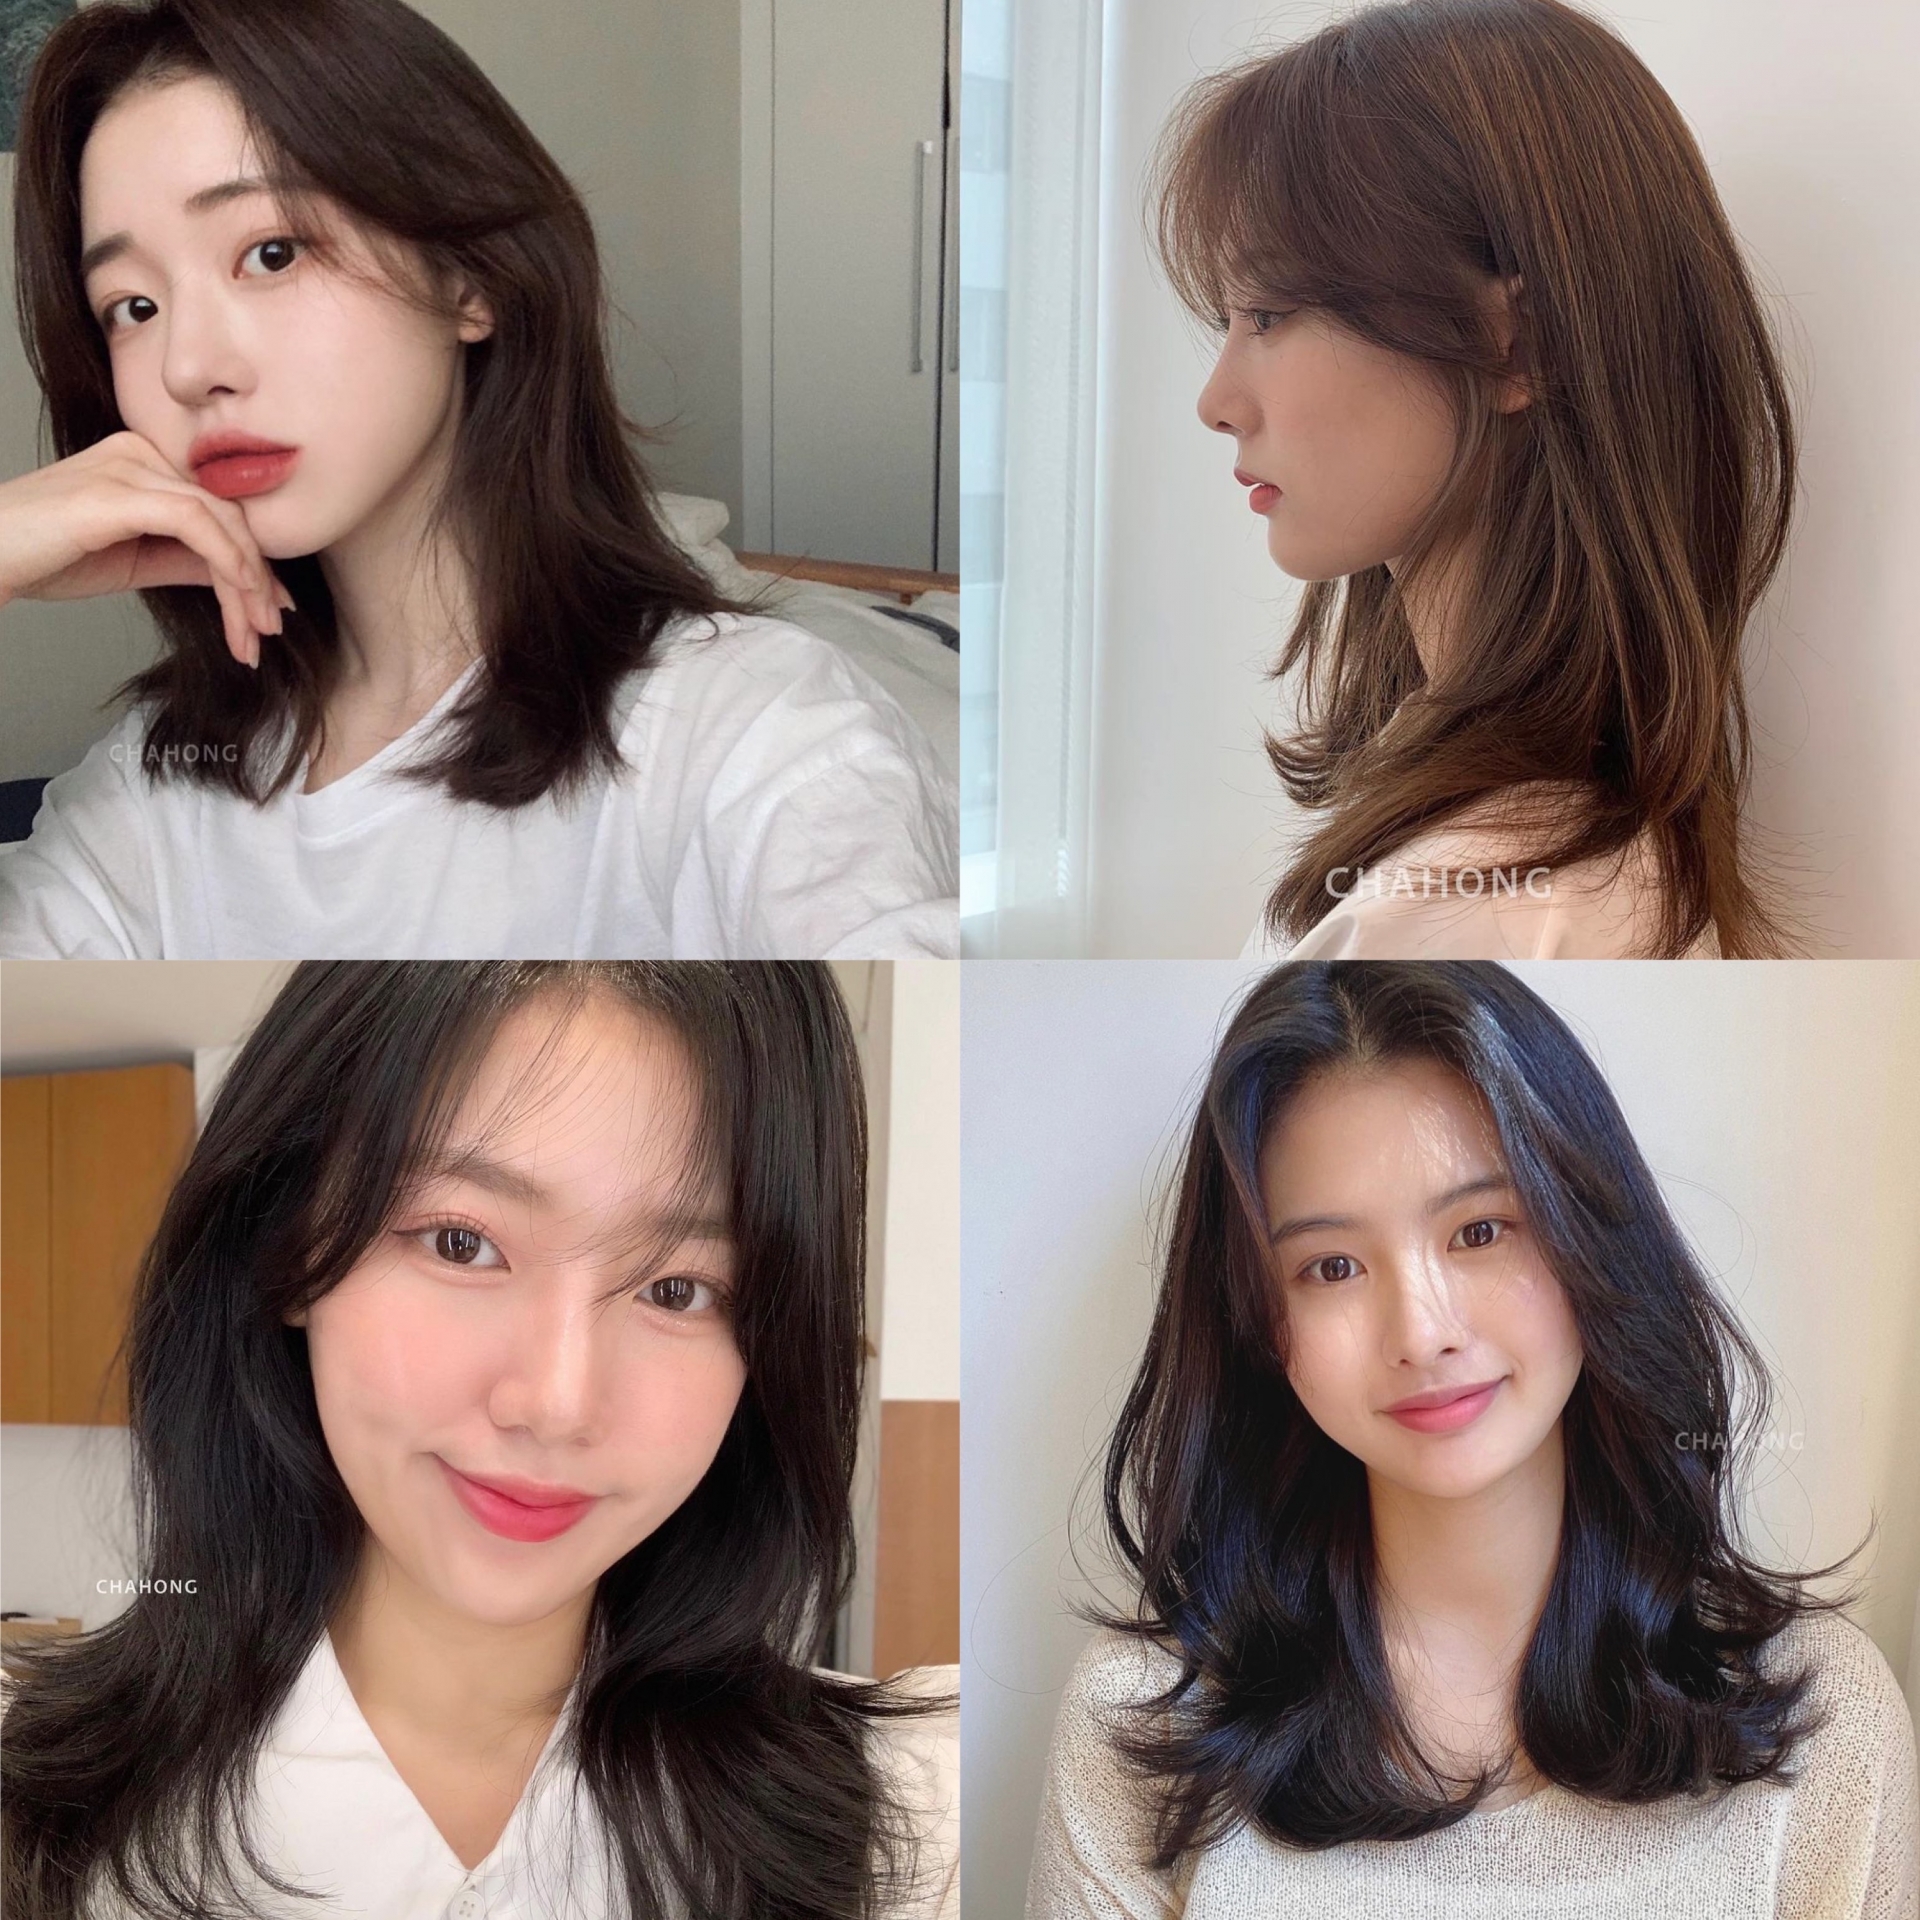 Mỗi khi cắt tóc layer ngang vai, gái Hàn cũng không quên thử nghiệm nhiều kiểu mái khác nhau. Từ mái bay, mái thưa cho đến mái bằng cũng đều phù hợp với kiểu tóc này, giúp tôn lên vẻ ngoài vừa hiện đại lại vừa cực xinh xắn.